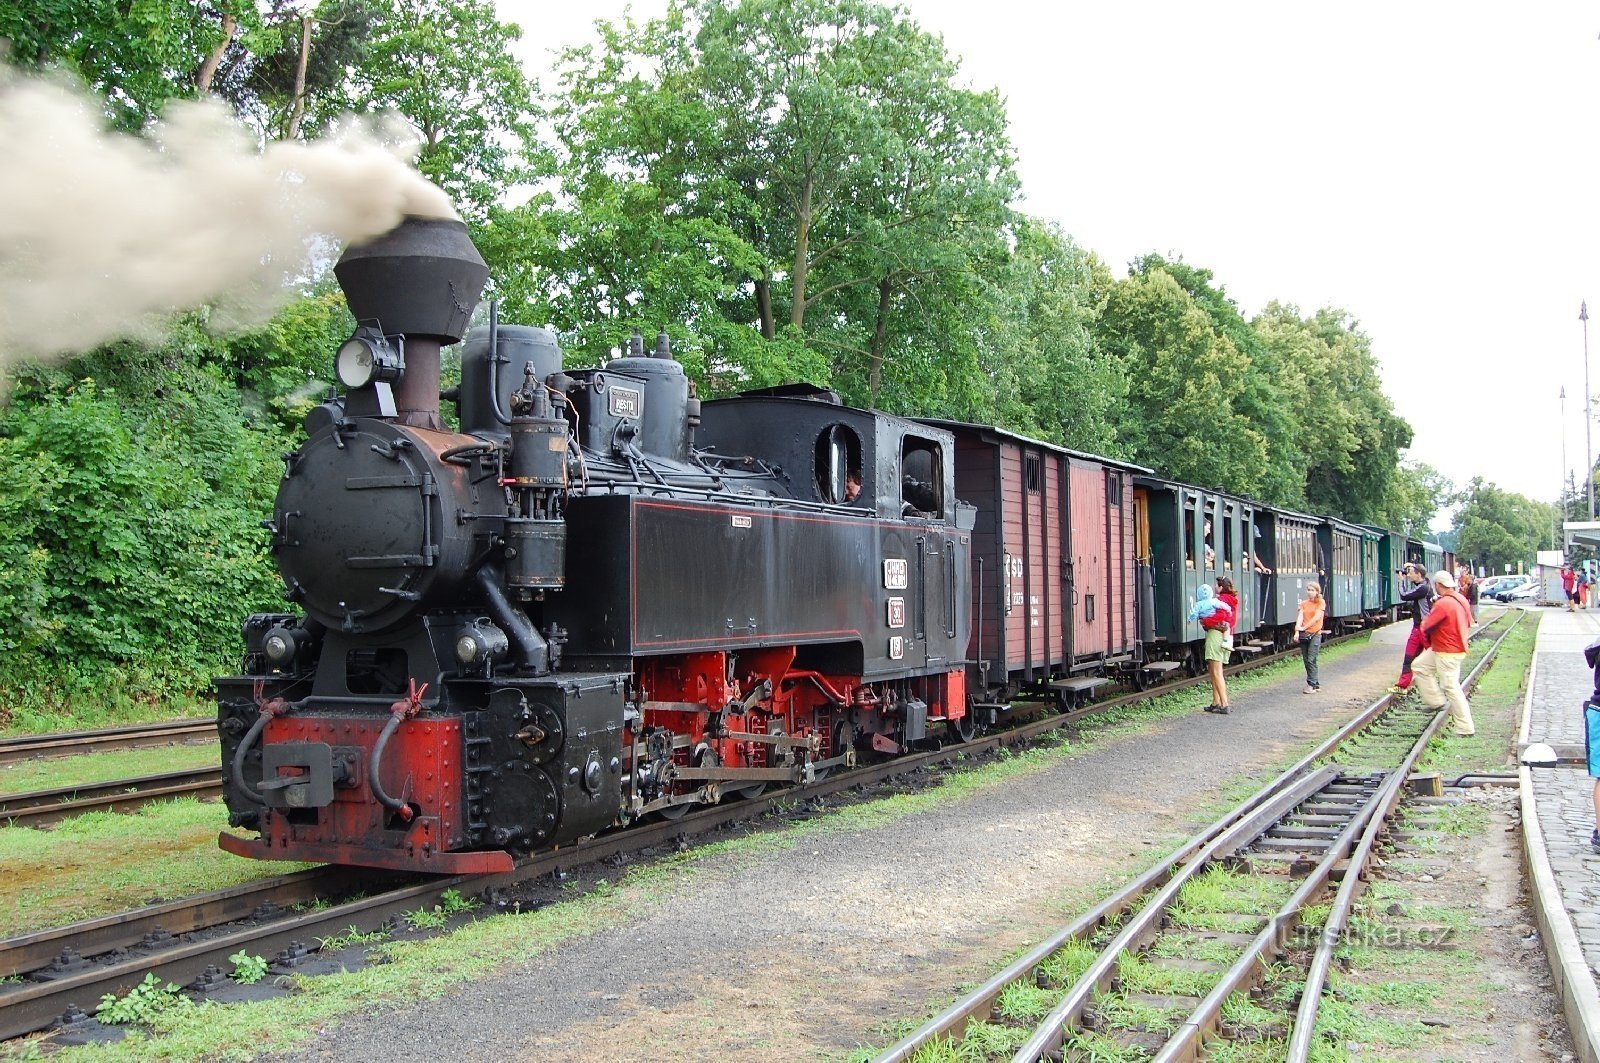 Jindřichův Hradec, train à voie étroite